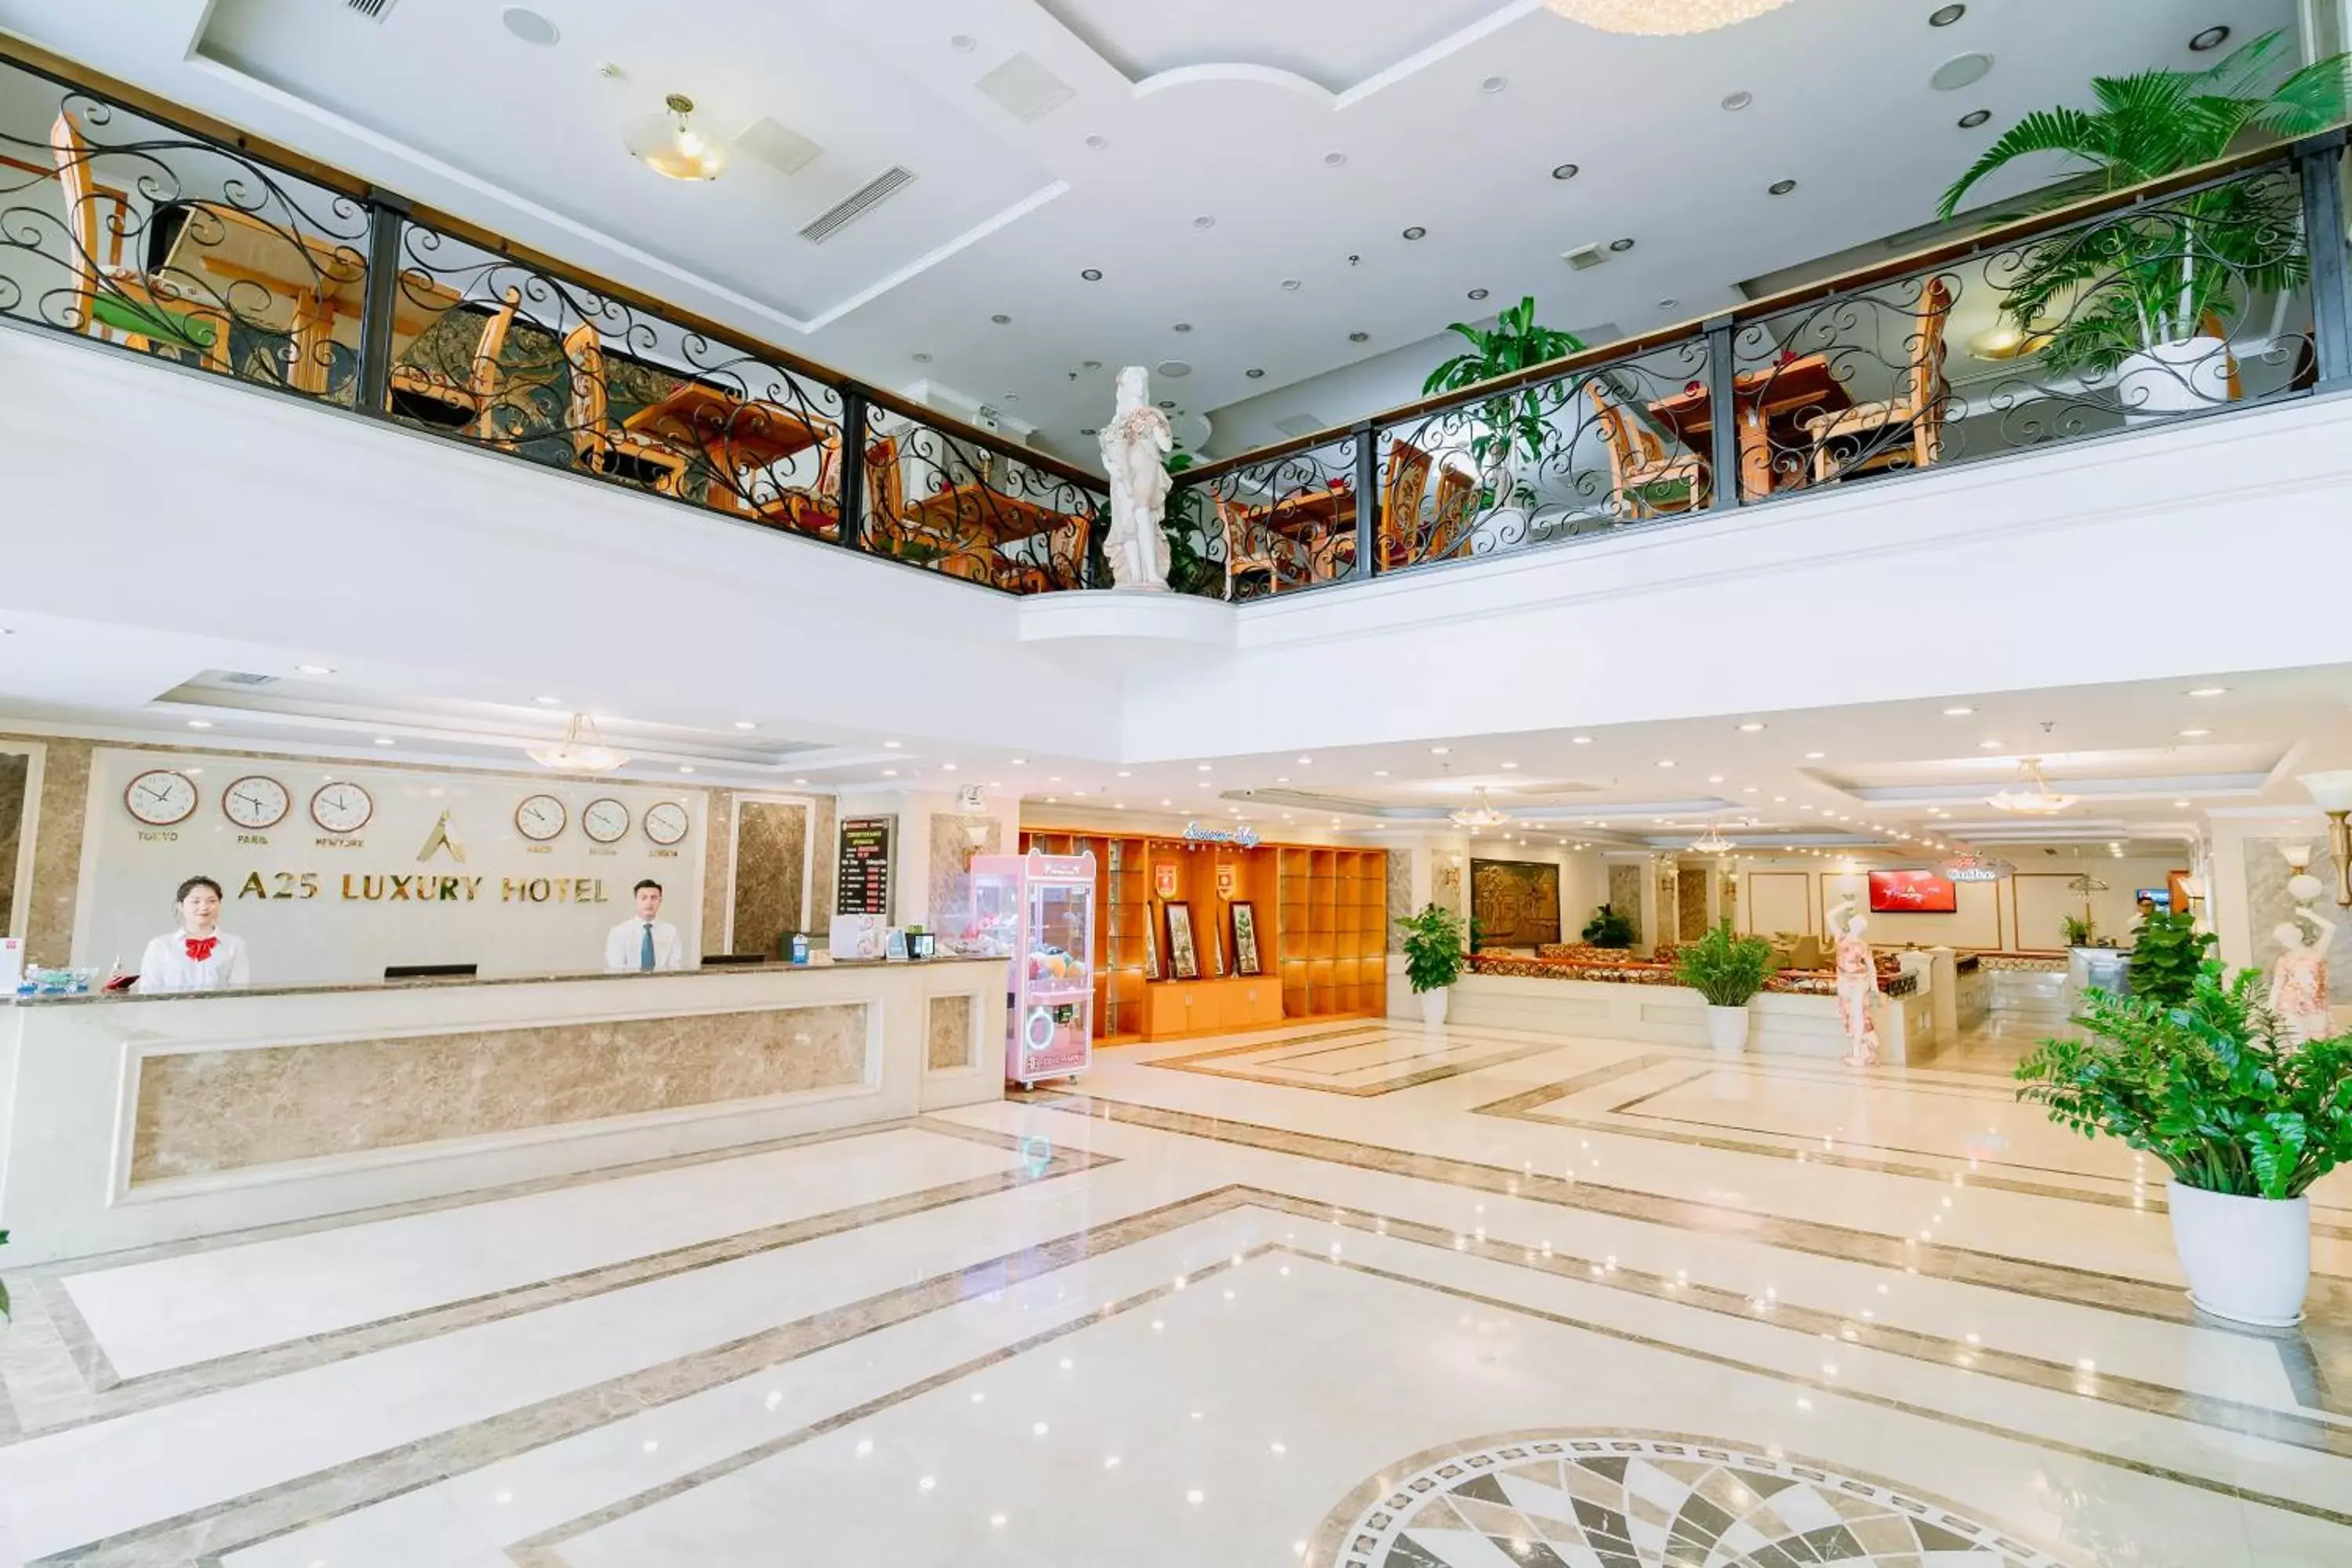 Lobby or reception, Lobby/Reception in A25 Luxury Hotel